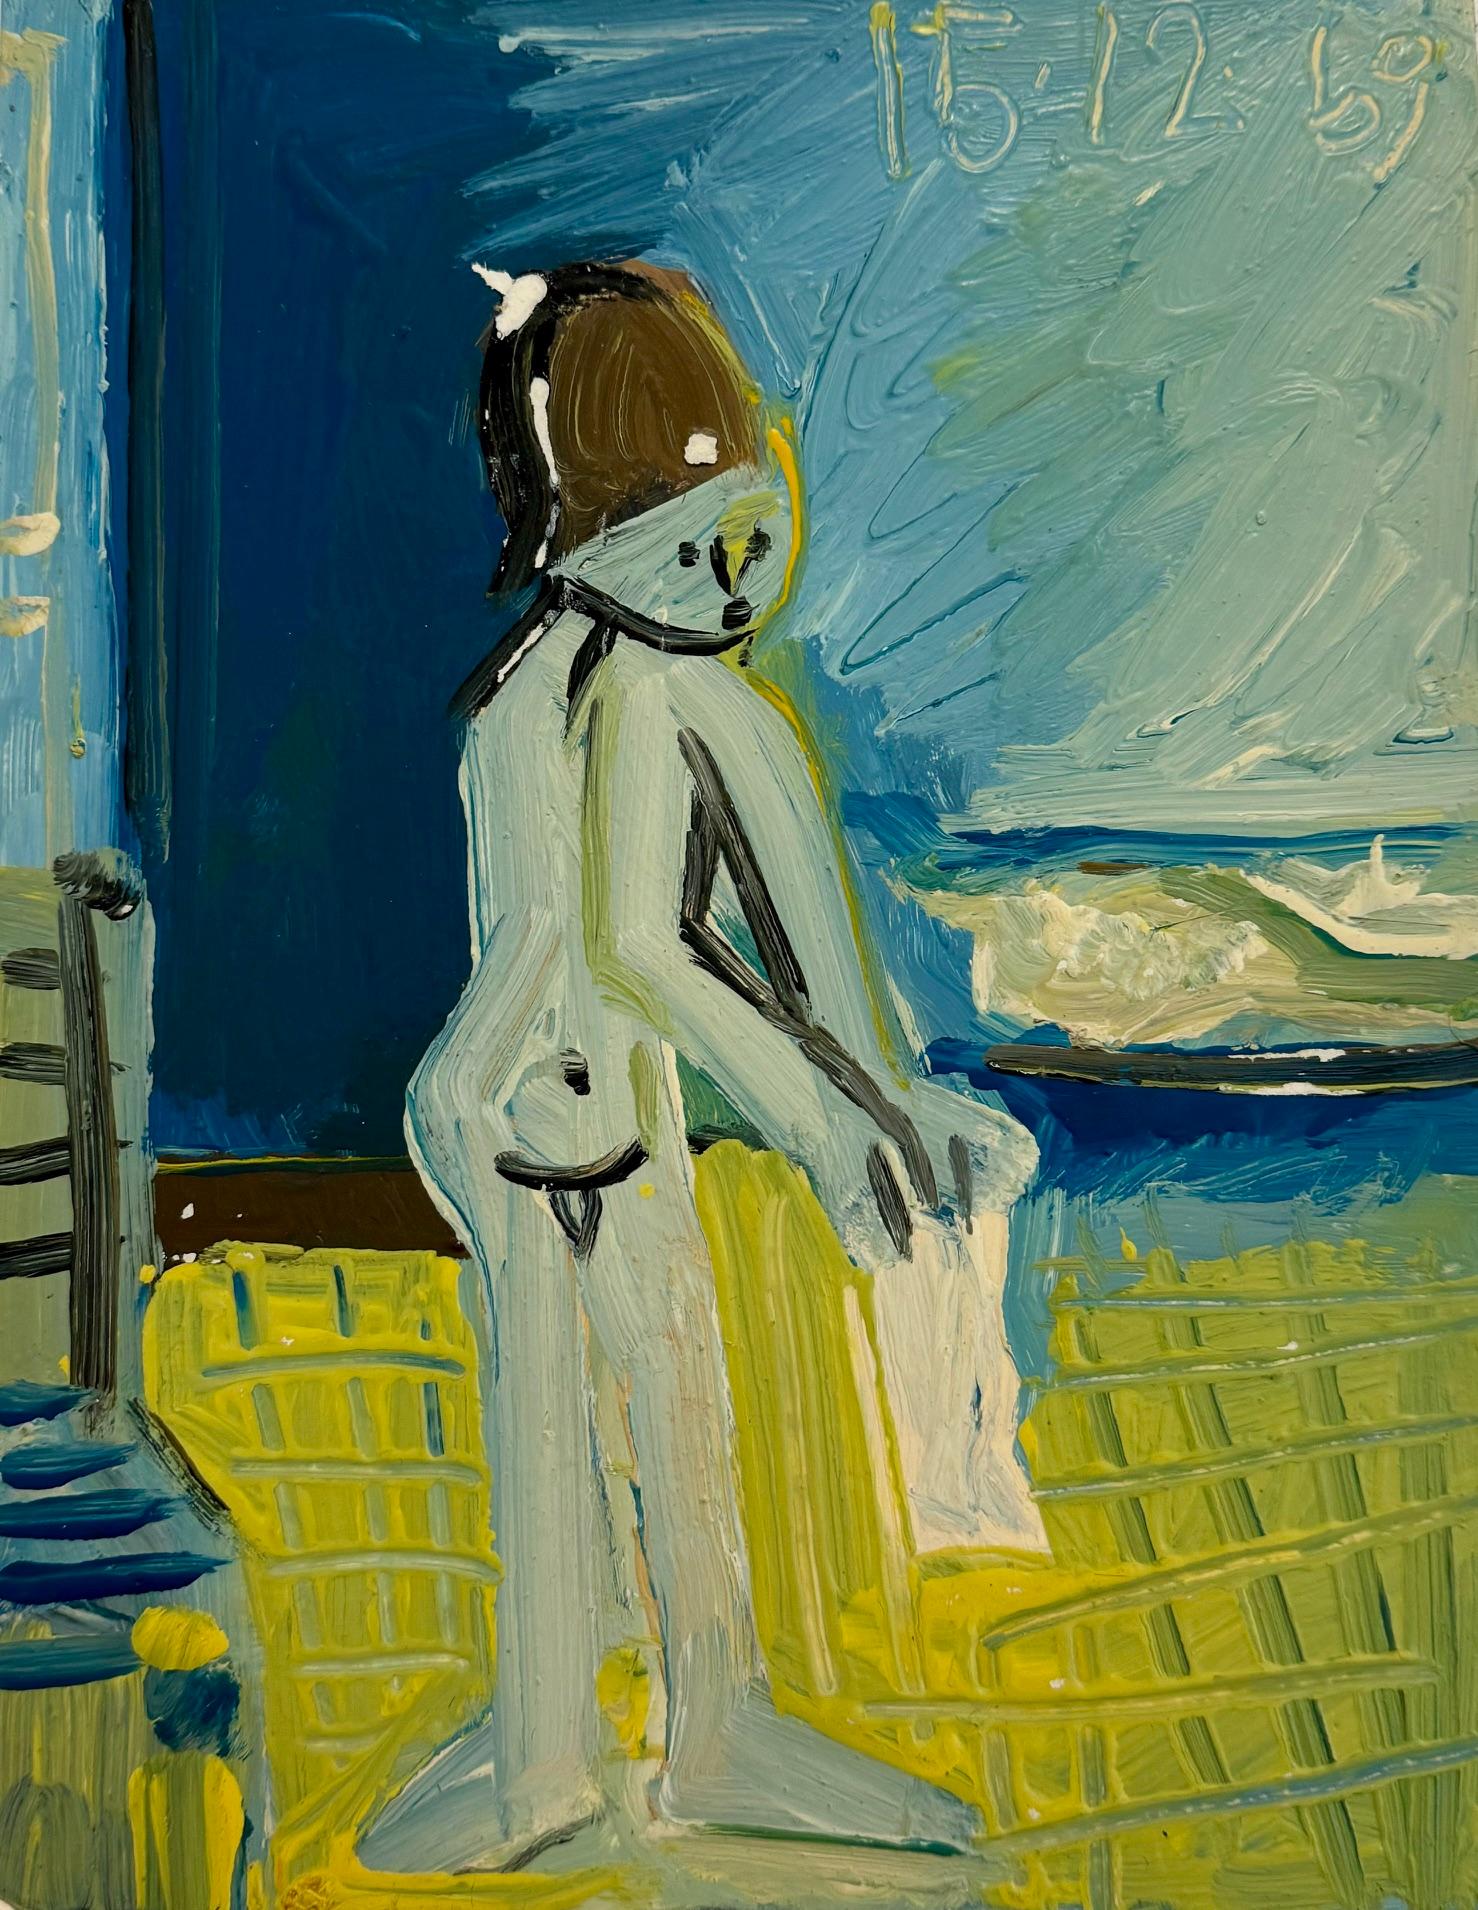 Raymond Debieve (1931-2011)
Né dans le nord de la France comme jumeau de son frère Michel Michele (qui deviendra lui aussi un artiste accompli plus tard), Raymond a peint toute sa vie.  Son travail coloré et fantaisiste rappelle le mouvement cubiste